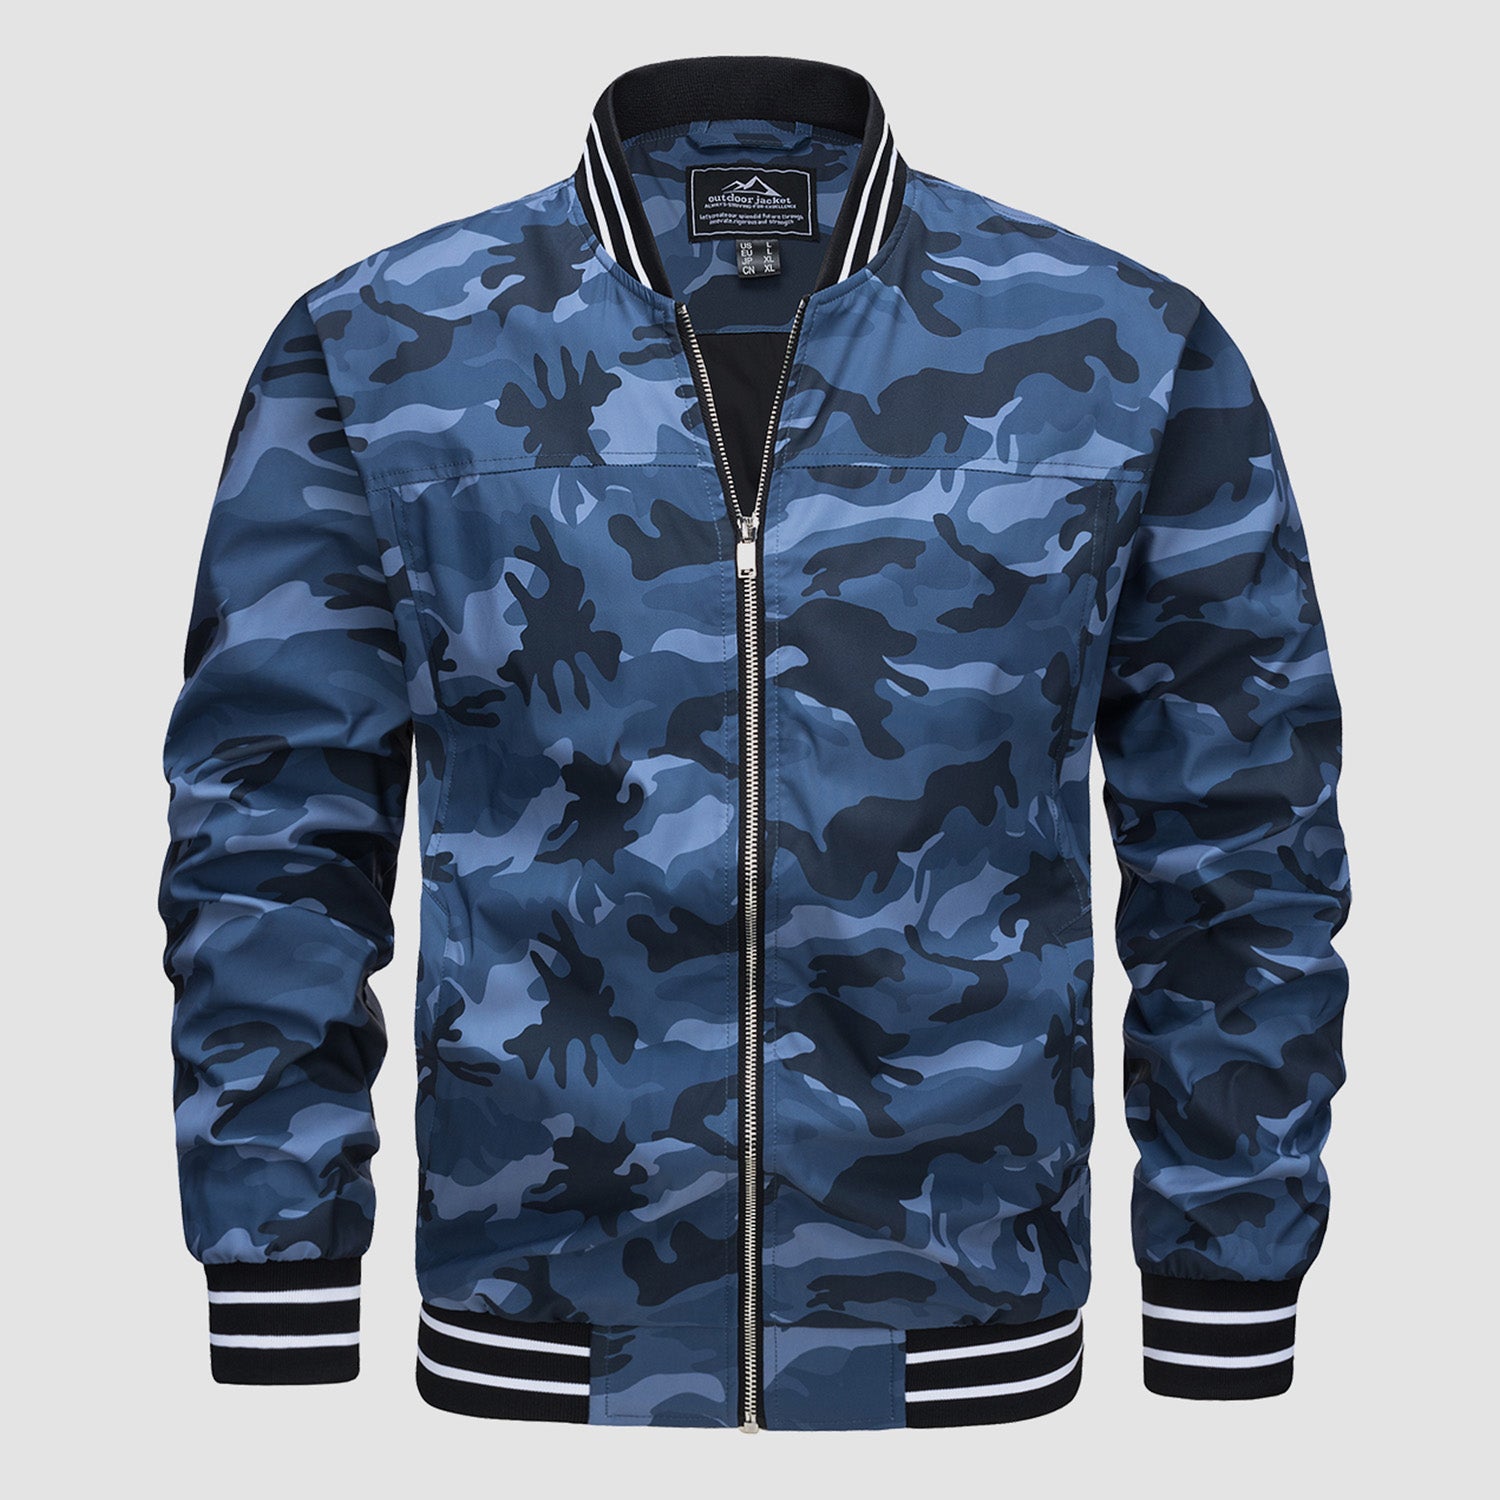 Men's Jacket Lightweight Windbreaker Bomber Jacket Windproof Casual Jacket Outwear